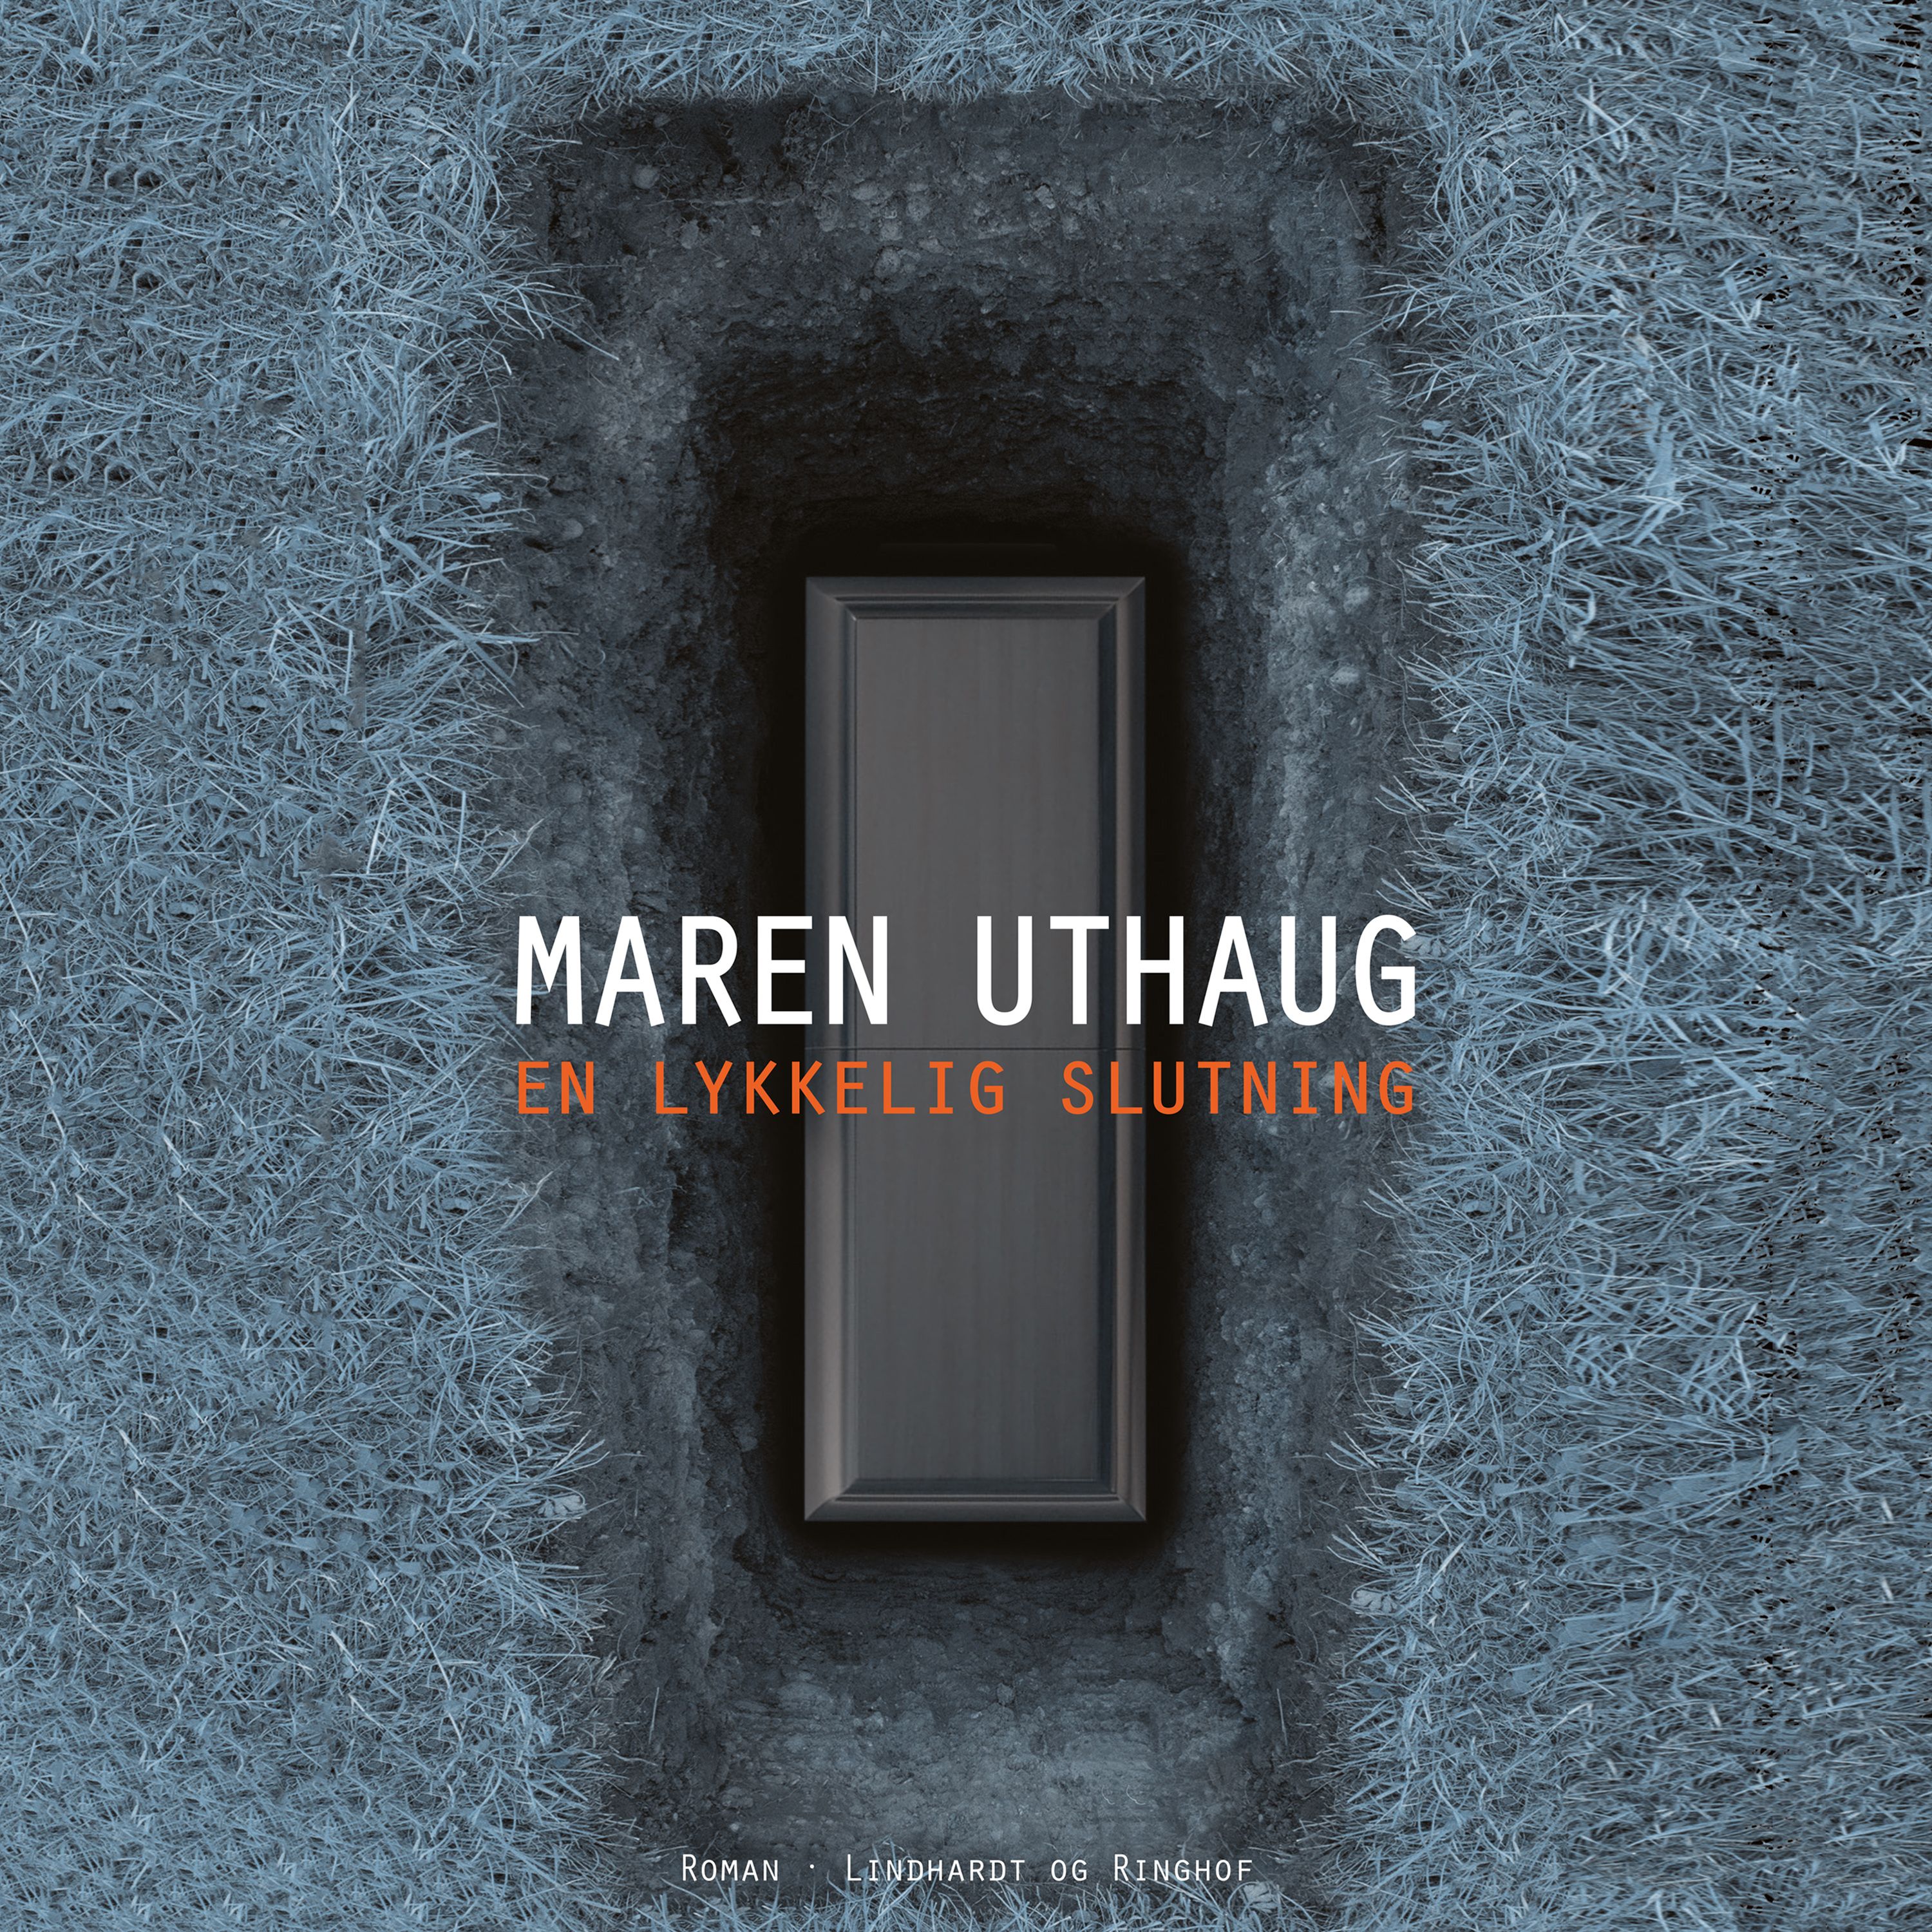 En lykkelig slutning, ljudbok av Maren Uthaug